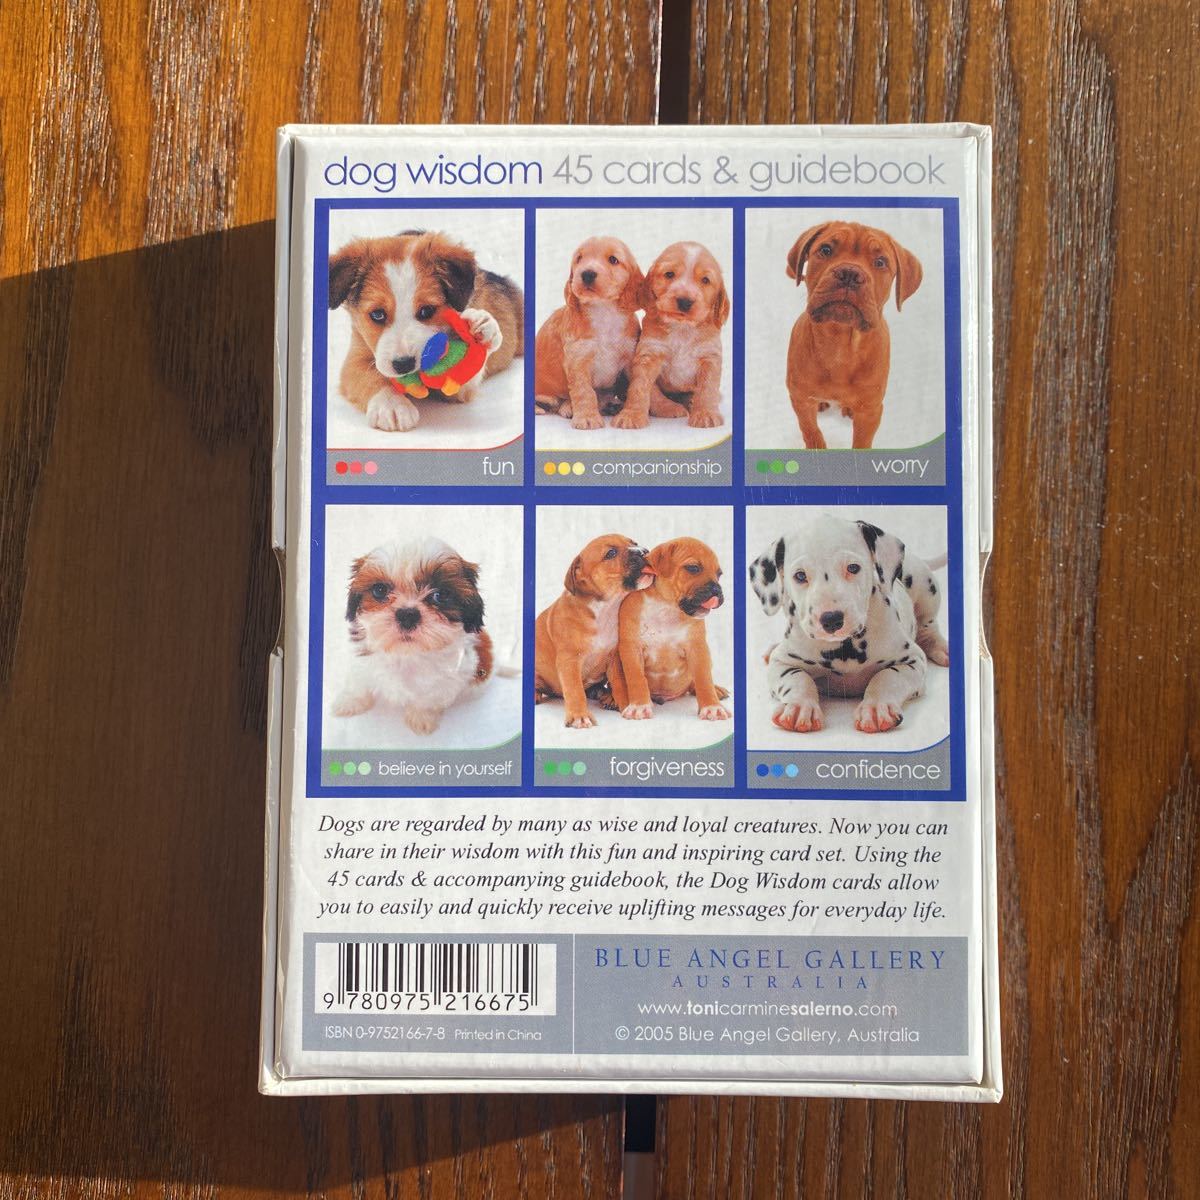 Dog Wisdom 犬の知恵 オラクルカード 癒し 英語版解説書付き 占い 売買されたオークション情報 Yahooの商品情報をアーカイブ公開 オークファン Aucfan Com